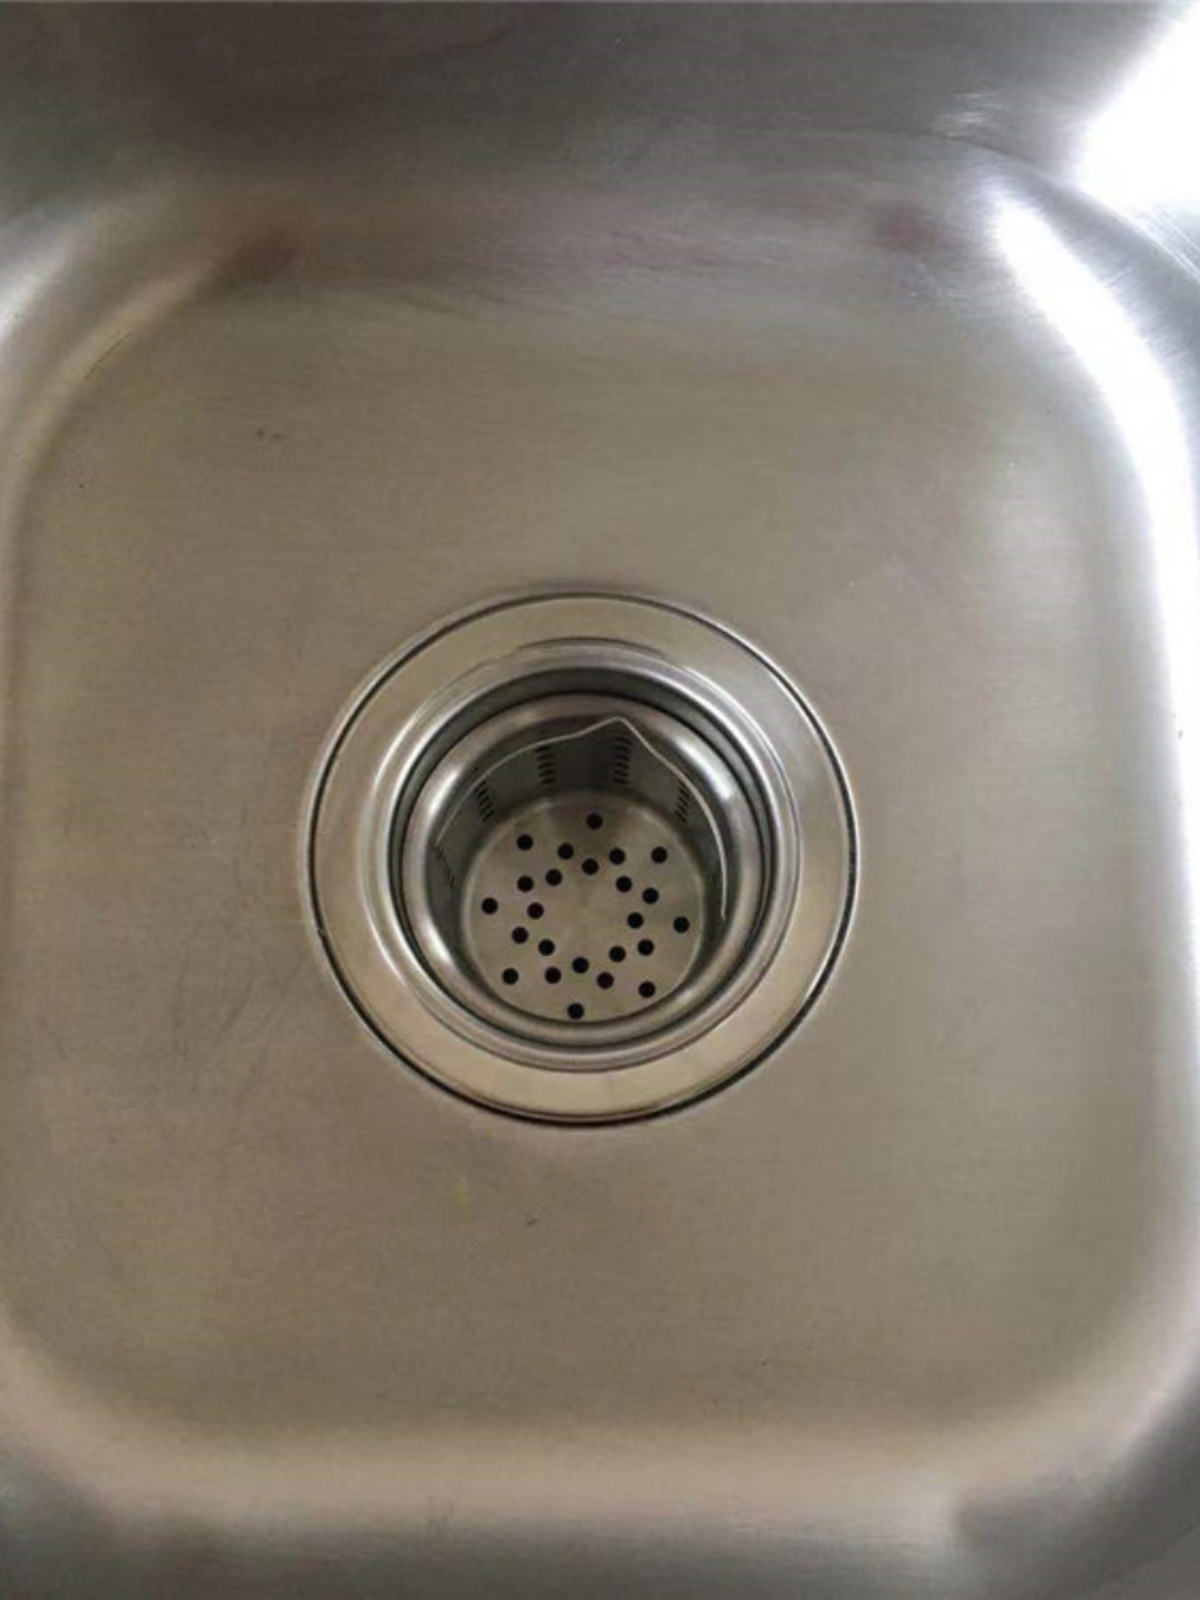 厨房水槽过滤器不锈钢漏斗过滤网提篮洗手盆下水道过滤防堵浴缸